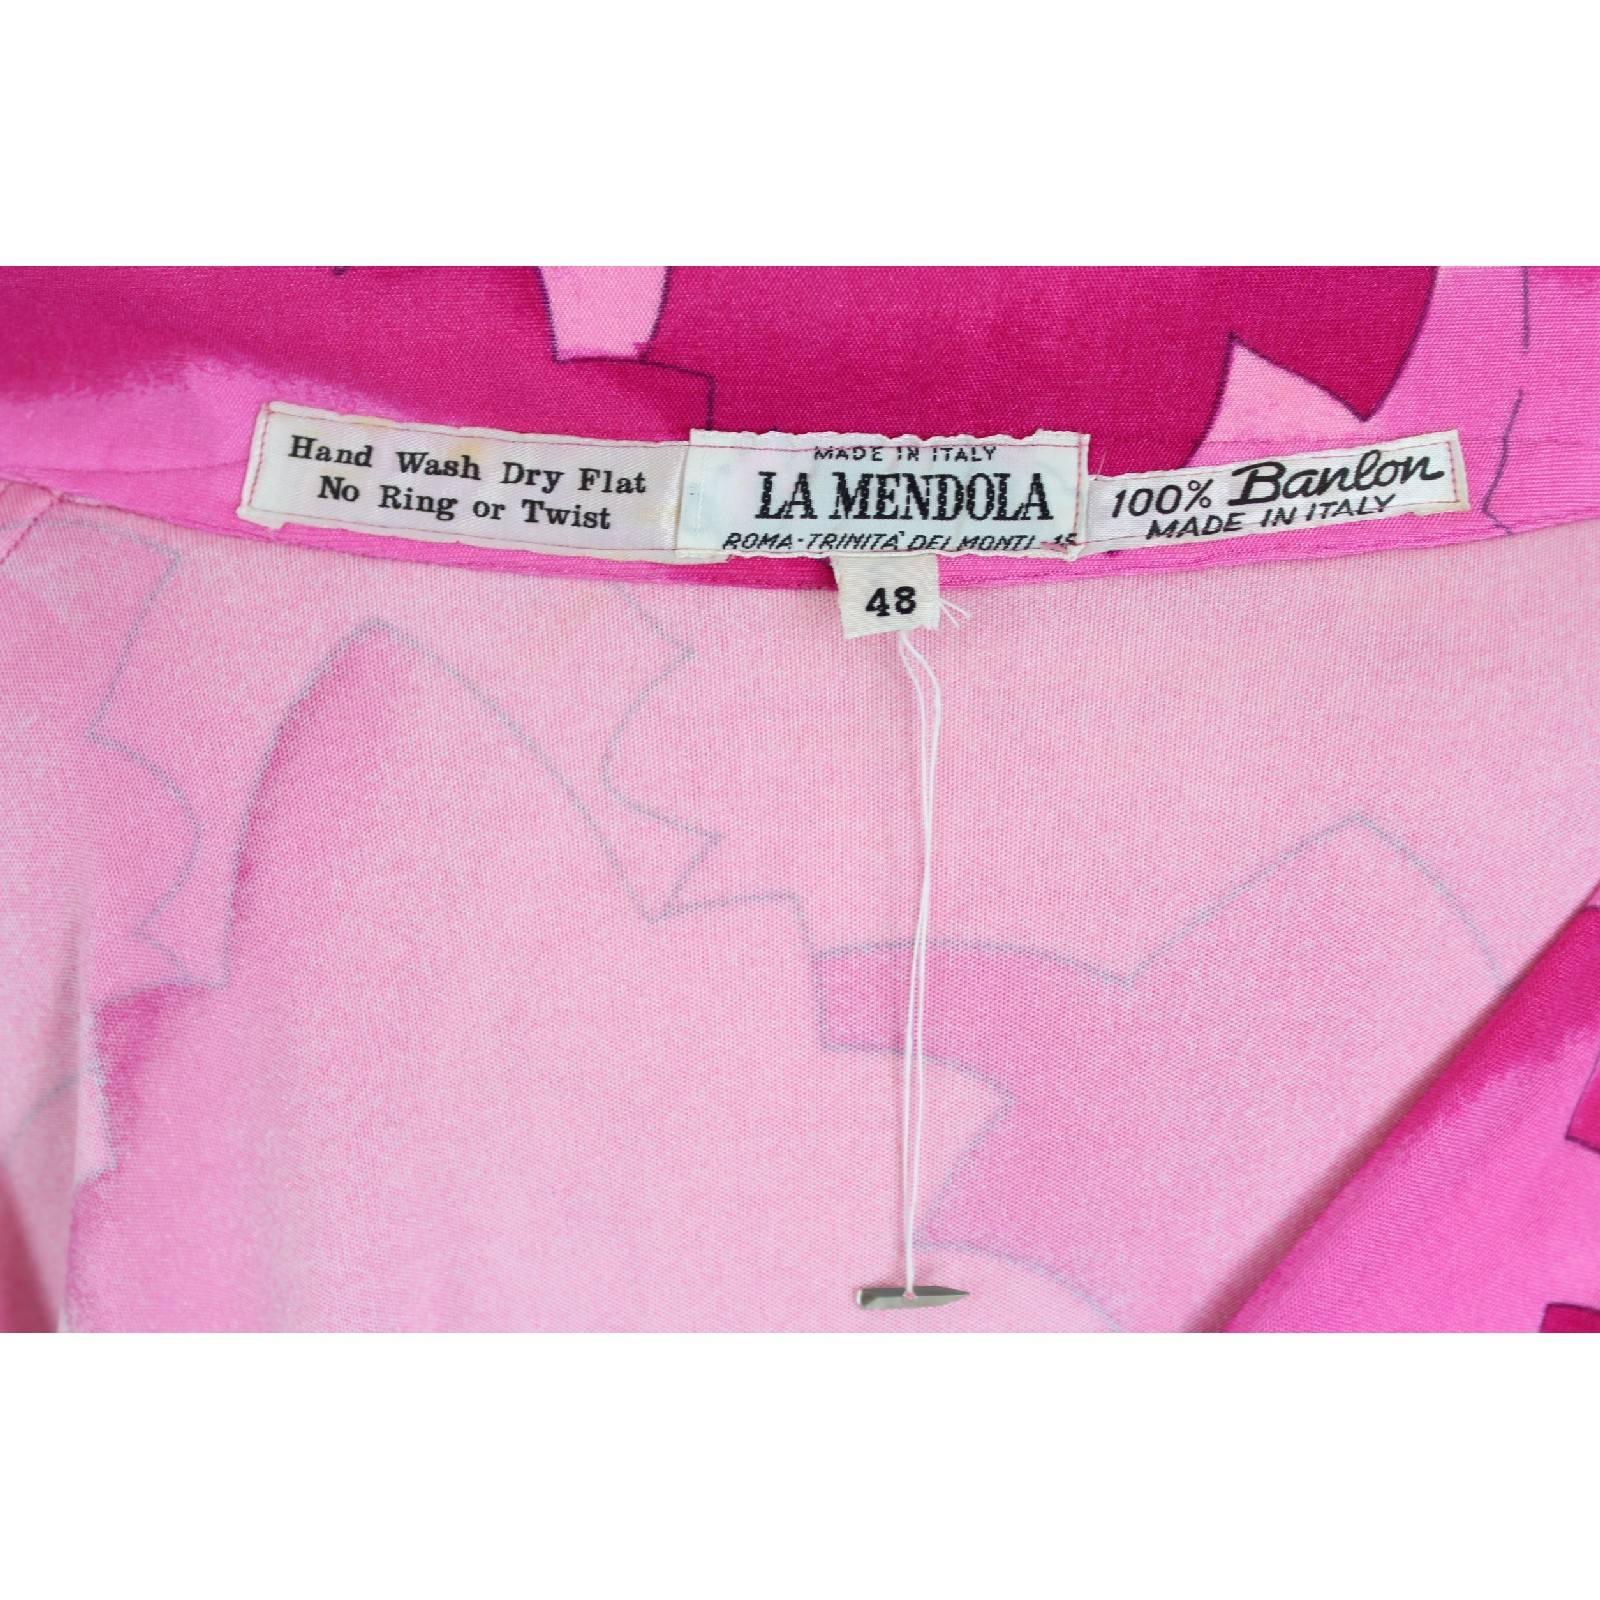 La Mendola dress vintage tunic fuchsia 1970s long 100% banlon size 48 geometric In New Condition For Sale In Brindisi, IT